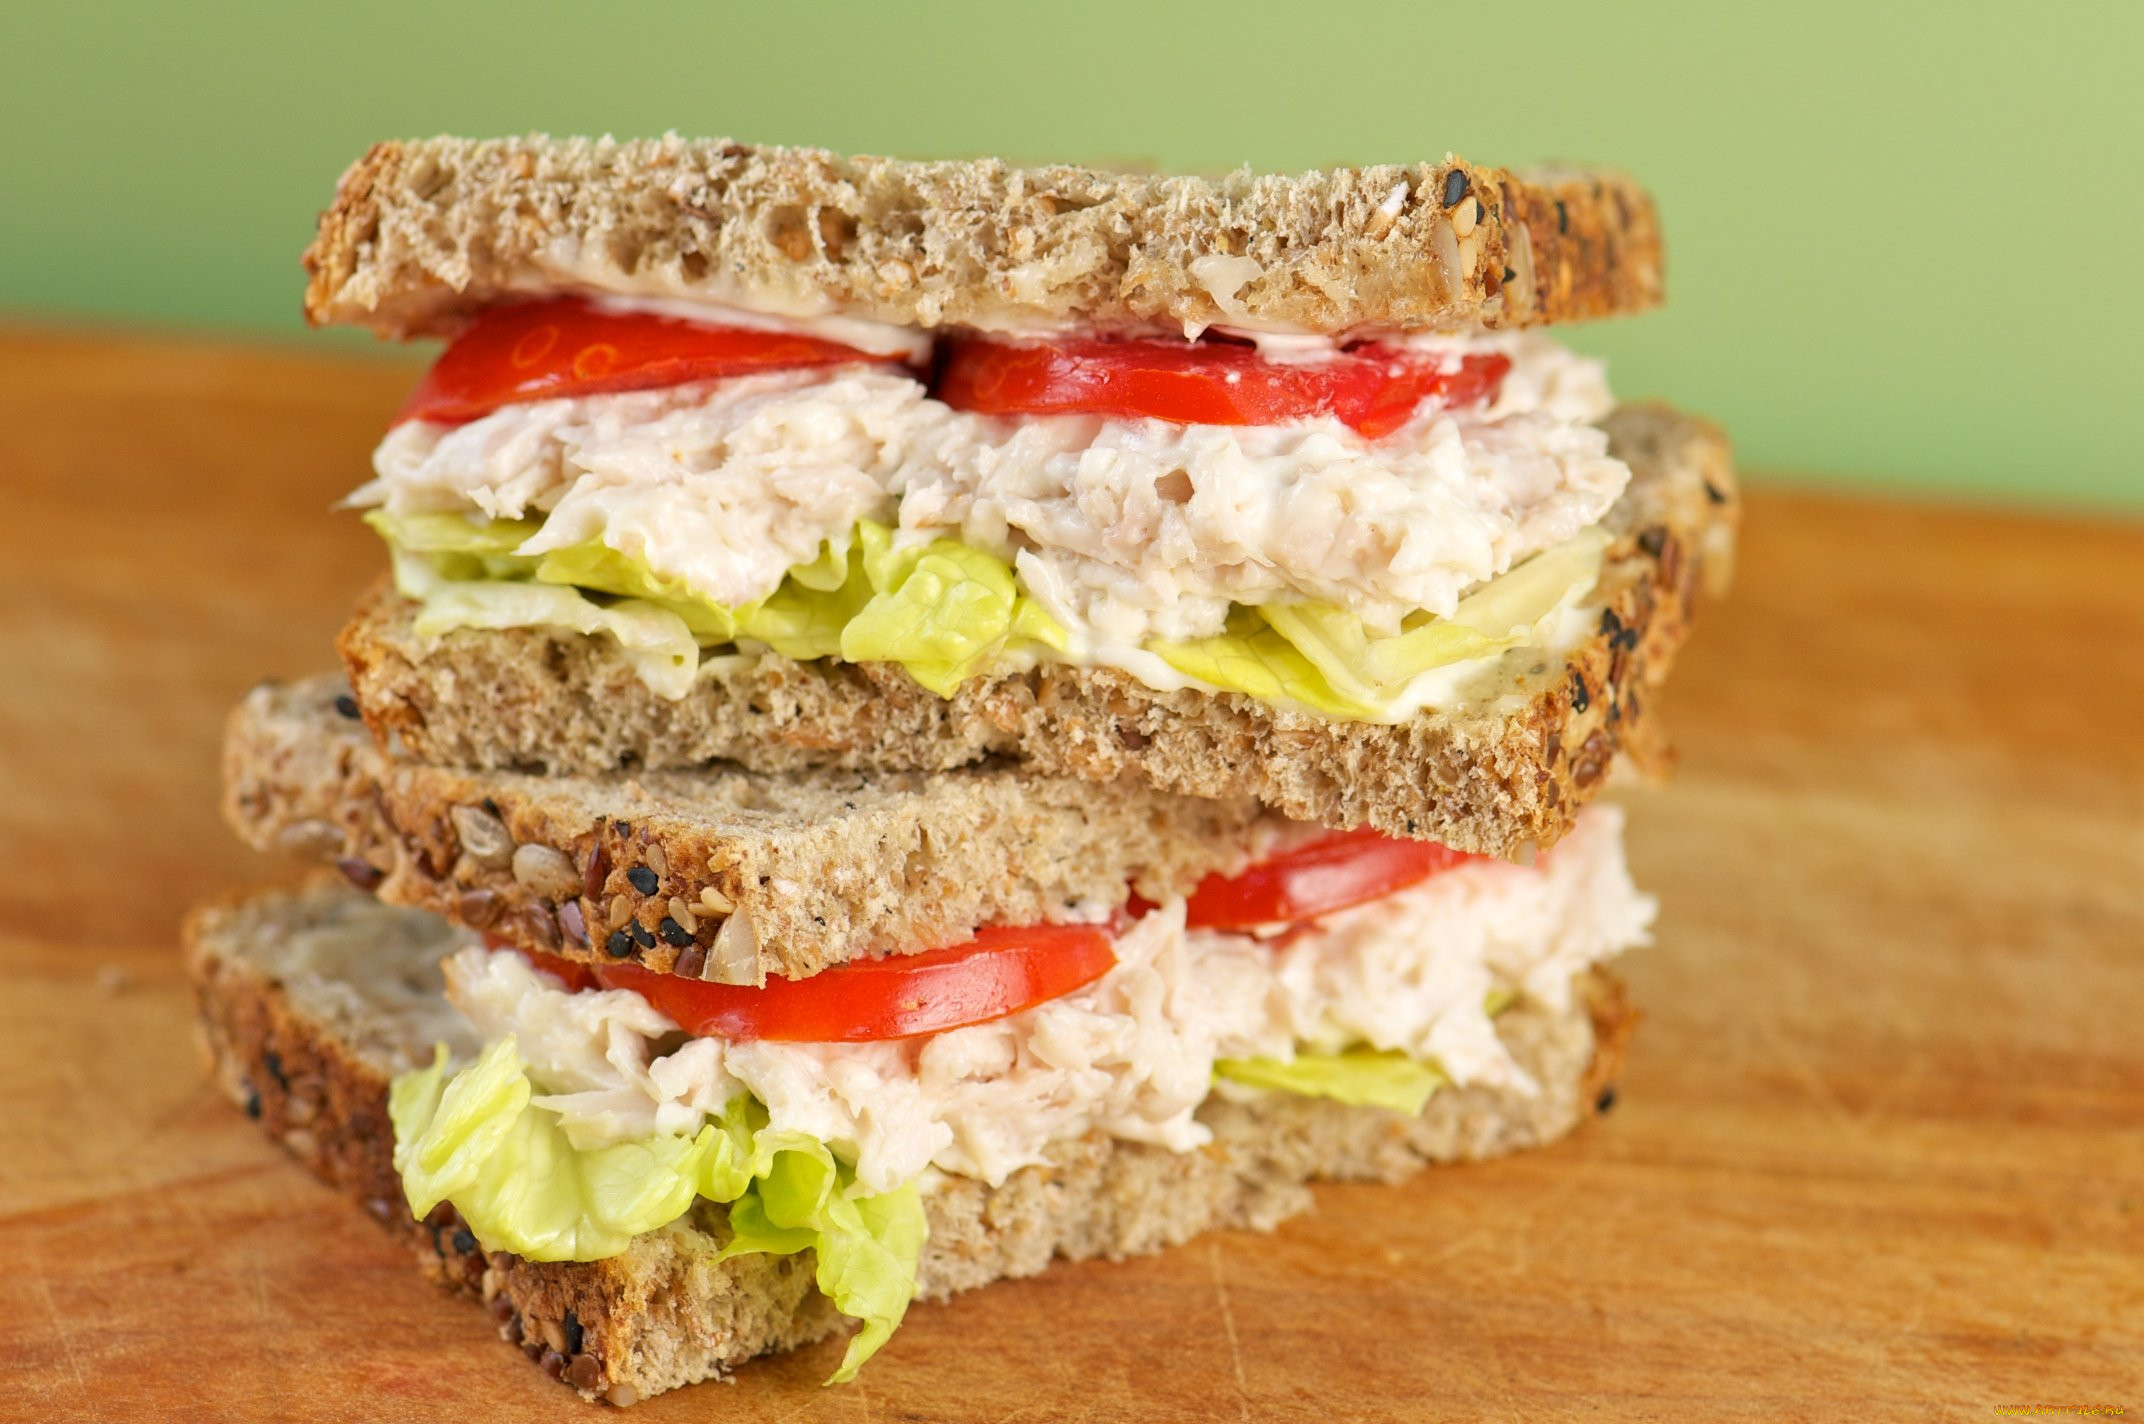 Бутерброды на пикник рецепты с фото простые и вкусные